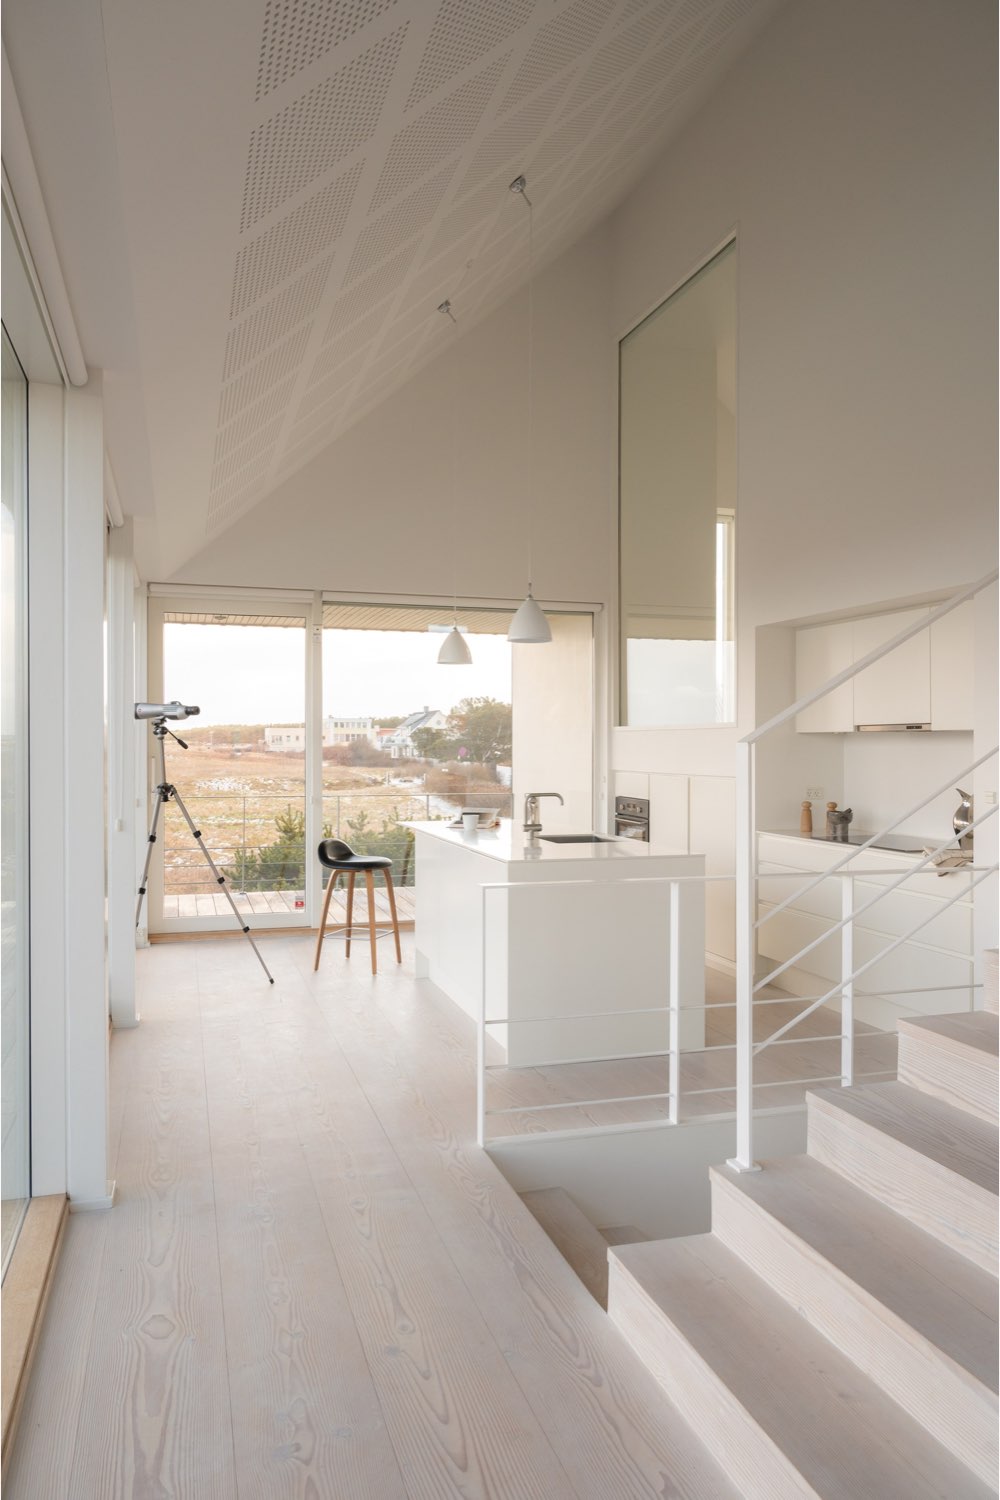 maison cotiere ultramoderne deco epuree cloison baie vitrée profiter du paysage extérieur depuis les pièces de vie